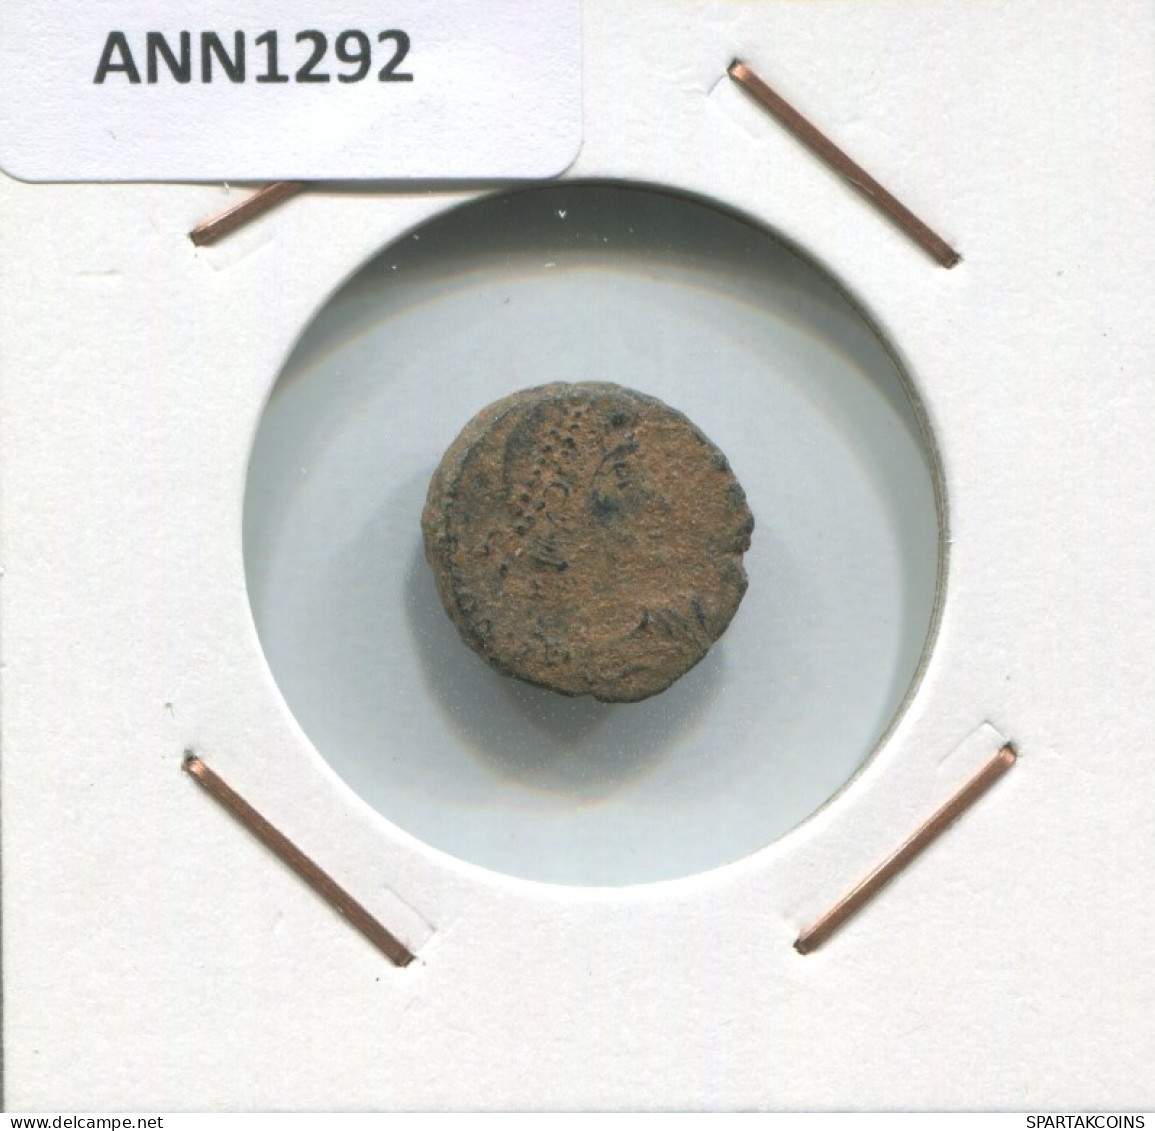 CONSTANTIUS II SISCIA SMAN AD324-337 GLORIA EXERCITVS 1.9g/14mm #ANN1292.9.U.A - L'Empire Chrétien (307 à 363)